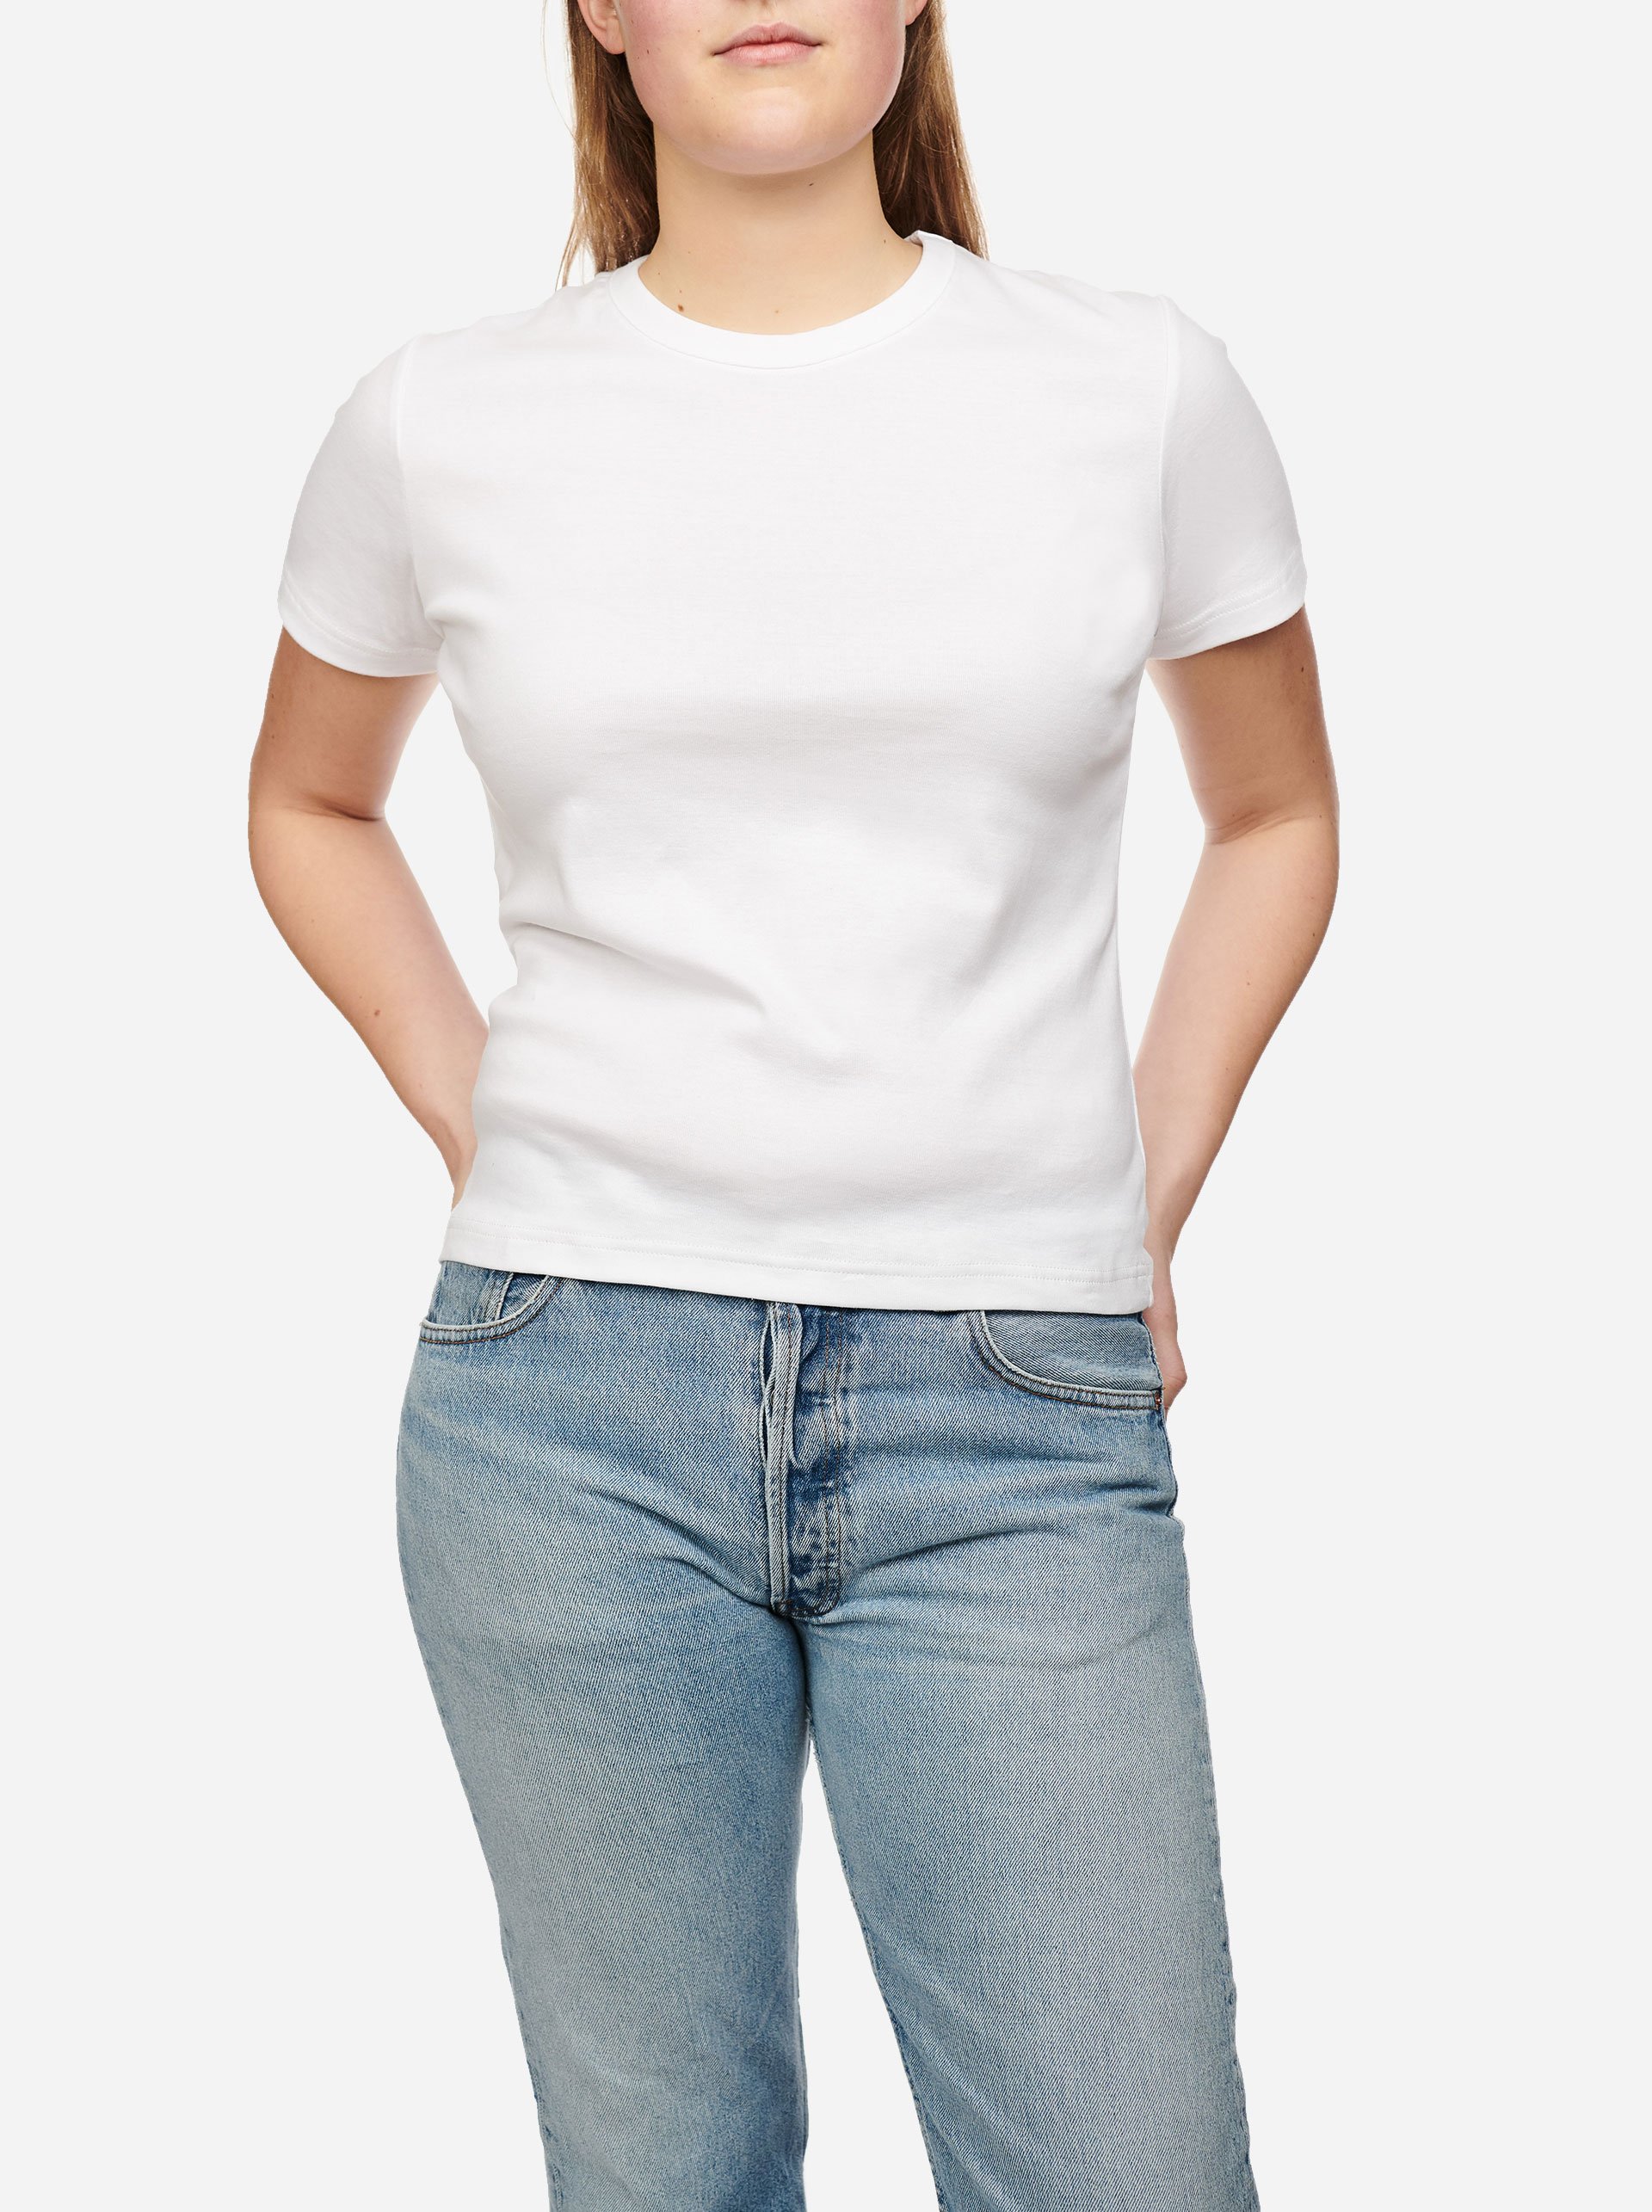 Teym_-_Size_Guide_-_T-shirt_-_Women_-_1